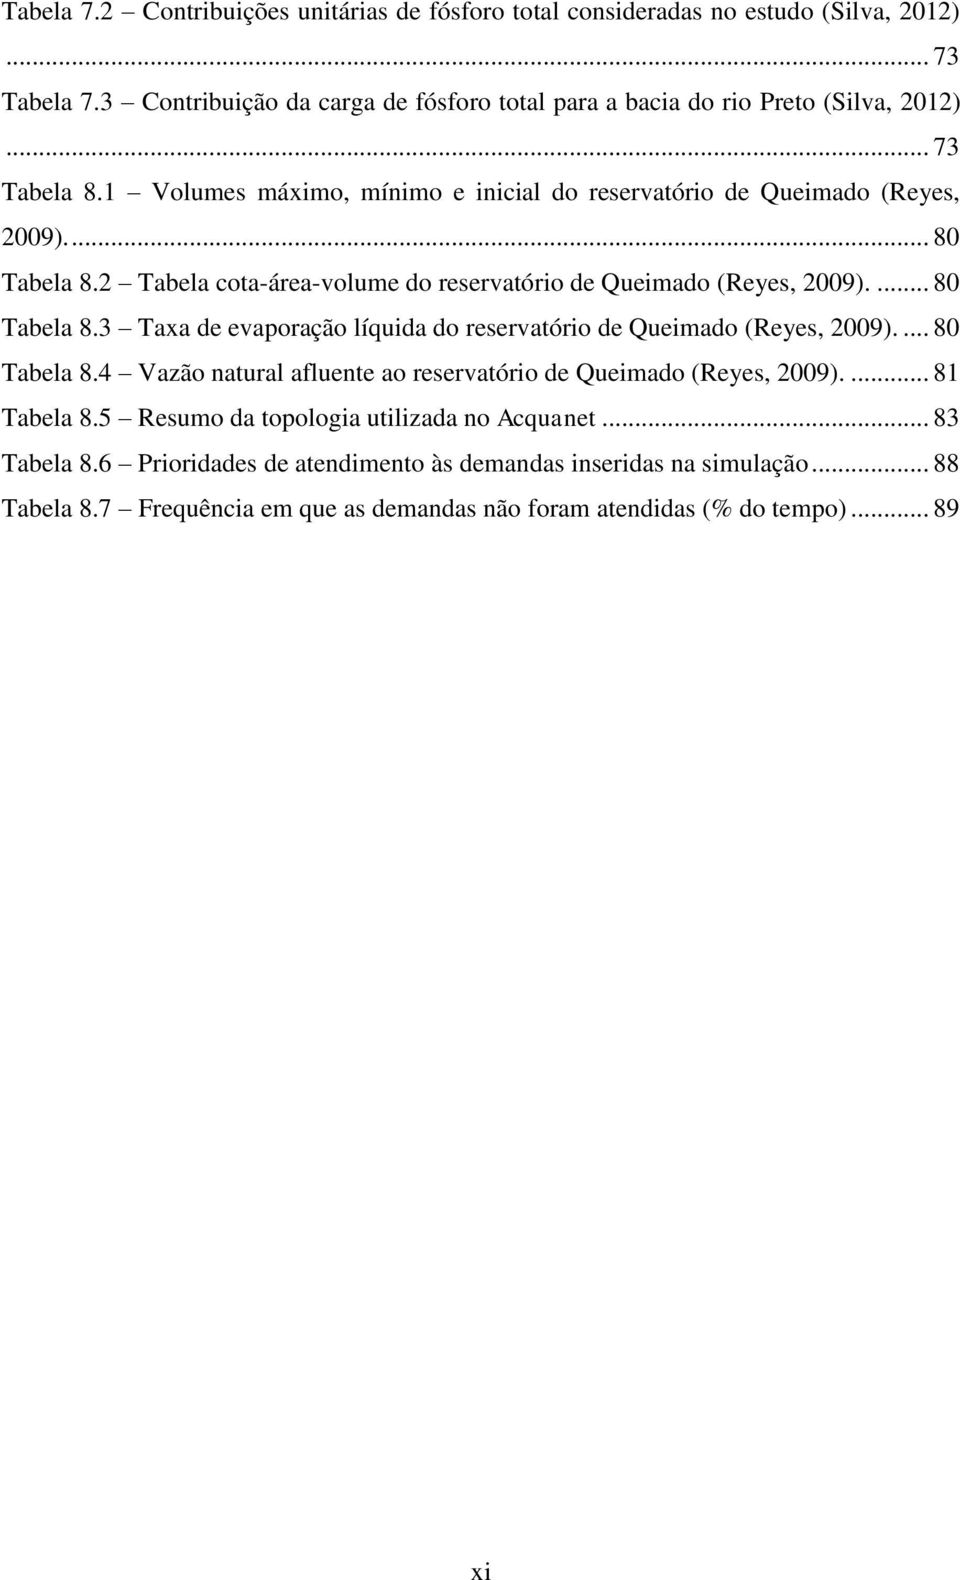 ... 80 Tabela 8.4 Vazão natural afluente ao reservatório de Queimado (Reyes, 2009).... 81 Tabela 8.5 Resumo da topologia utilizada no Acquanet... 83 Tabela 8.